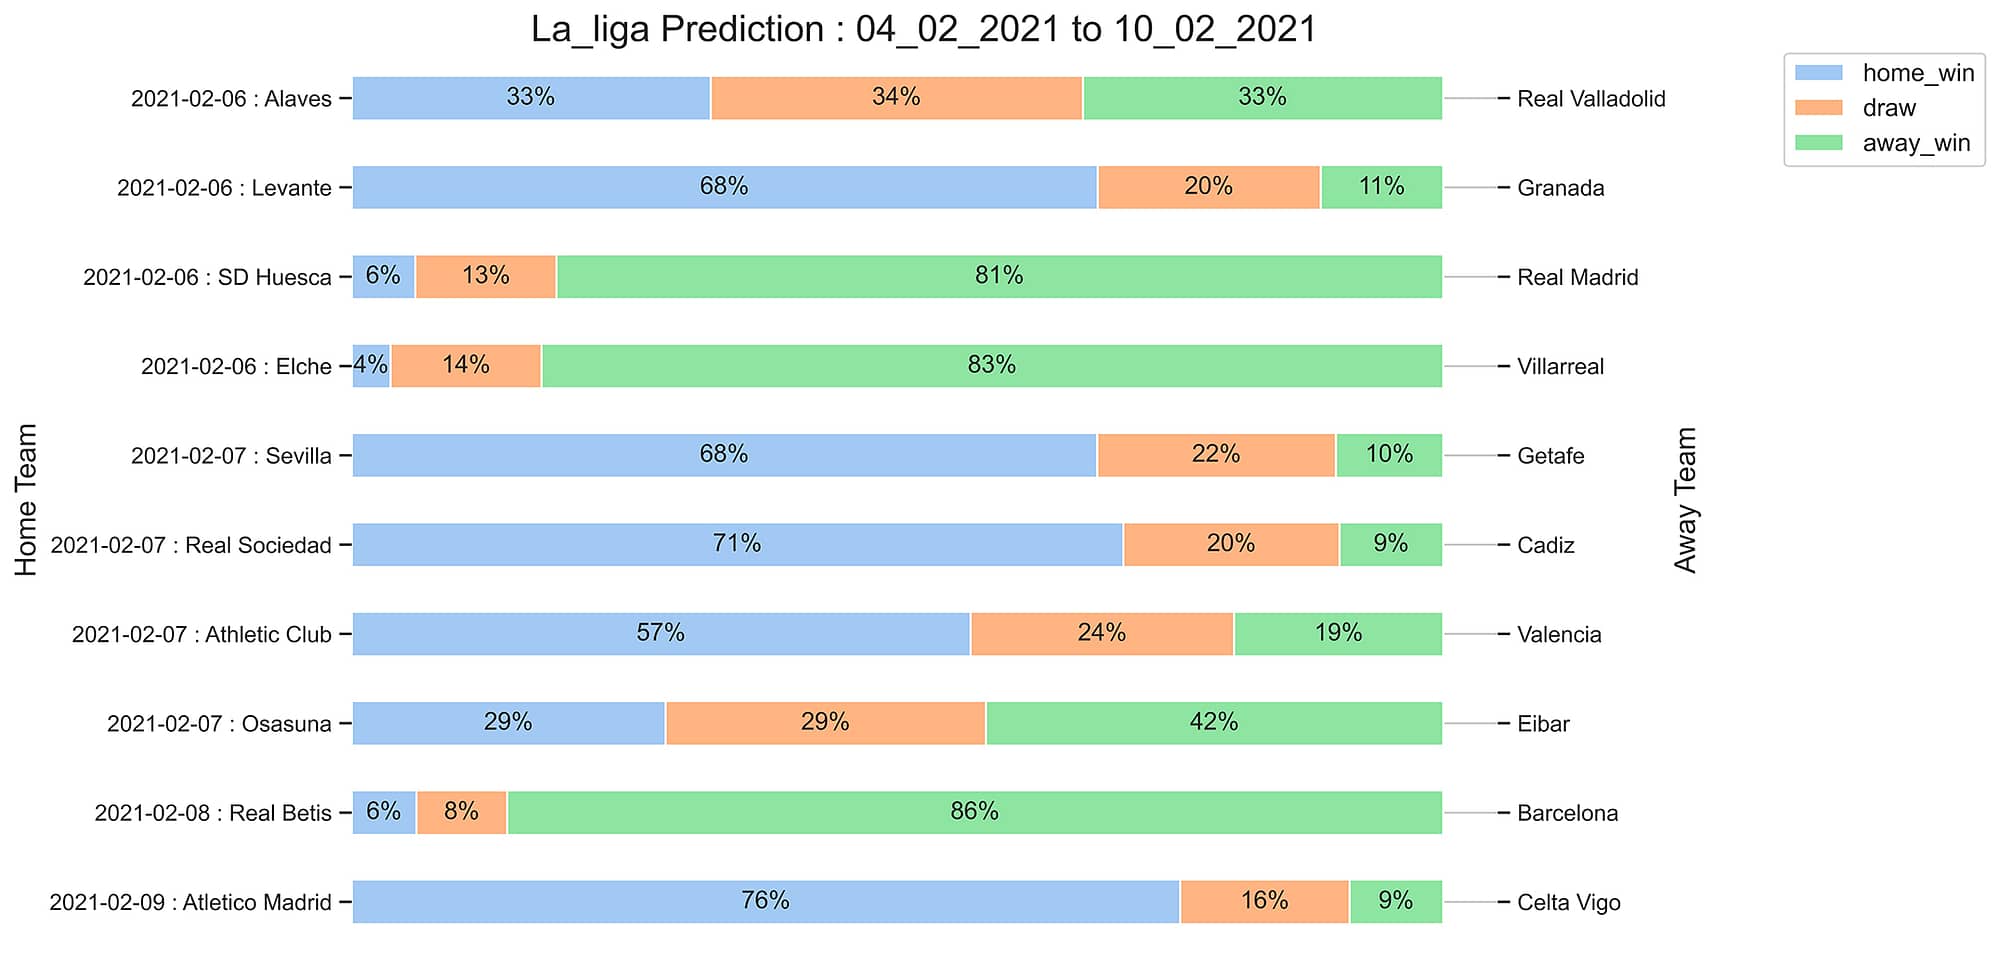 La_Liga_Prediction 04_02_2021